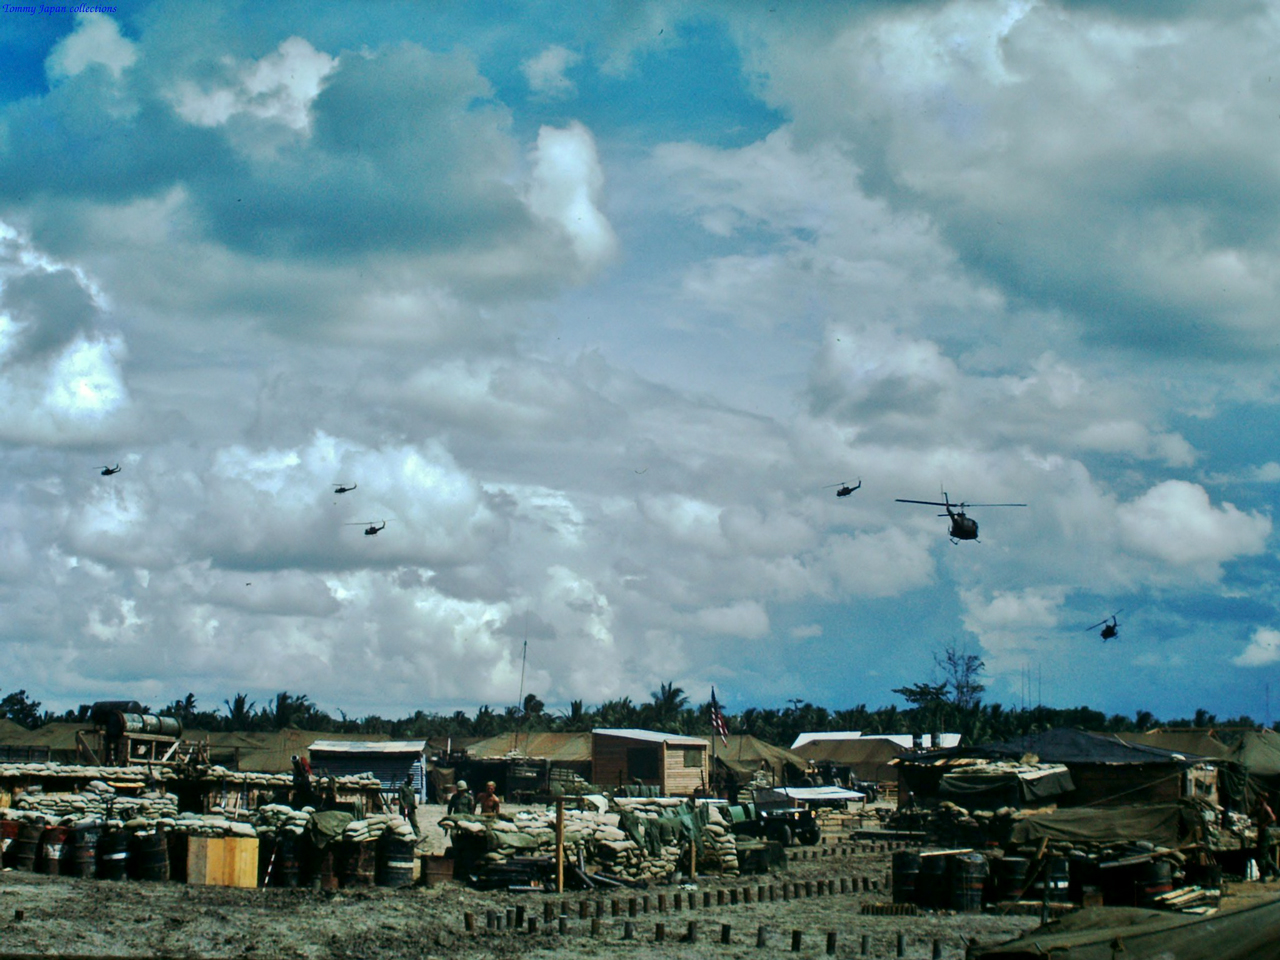 Doanh trại Bình Phước với những trực thăng chiến đấu bay đi và đến liên tục tháng 6 năm 1967 | Photo by Fletcher Clyde